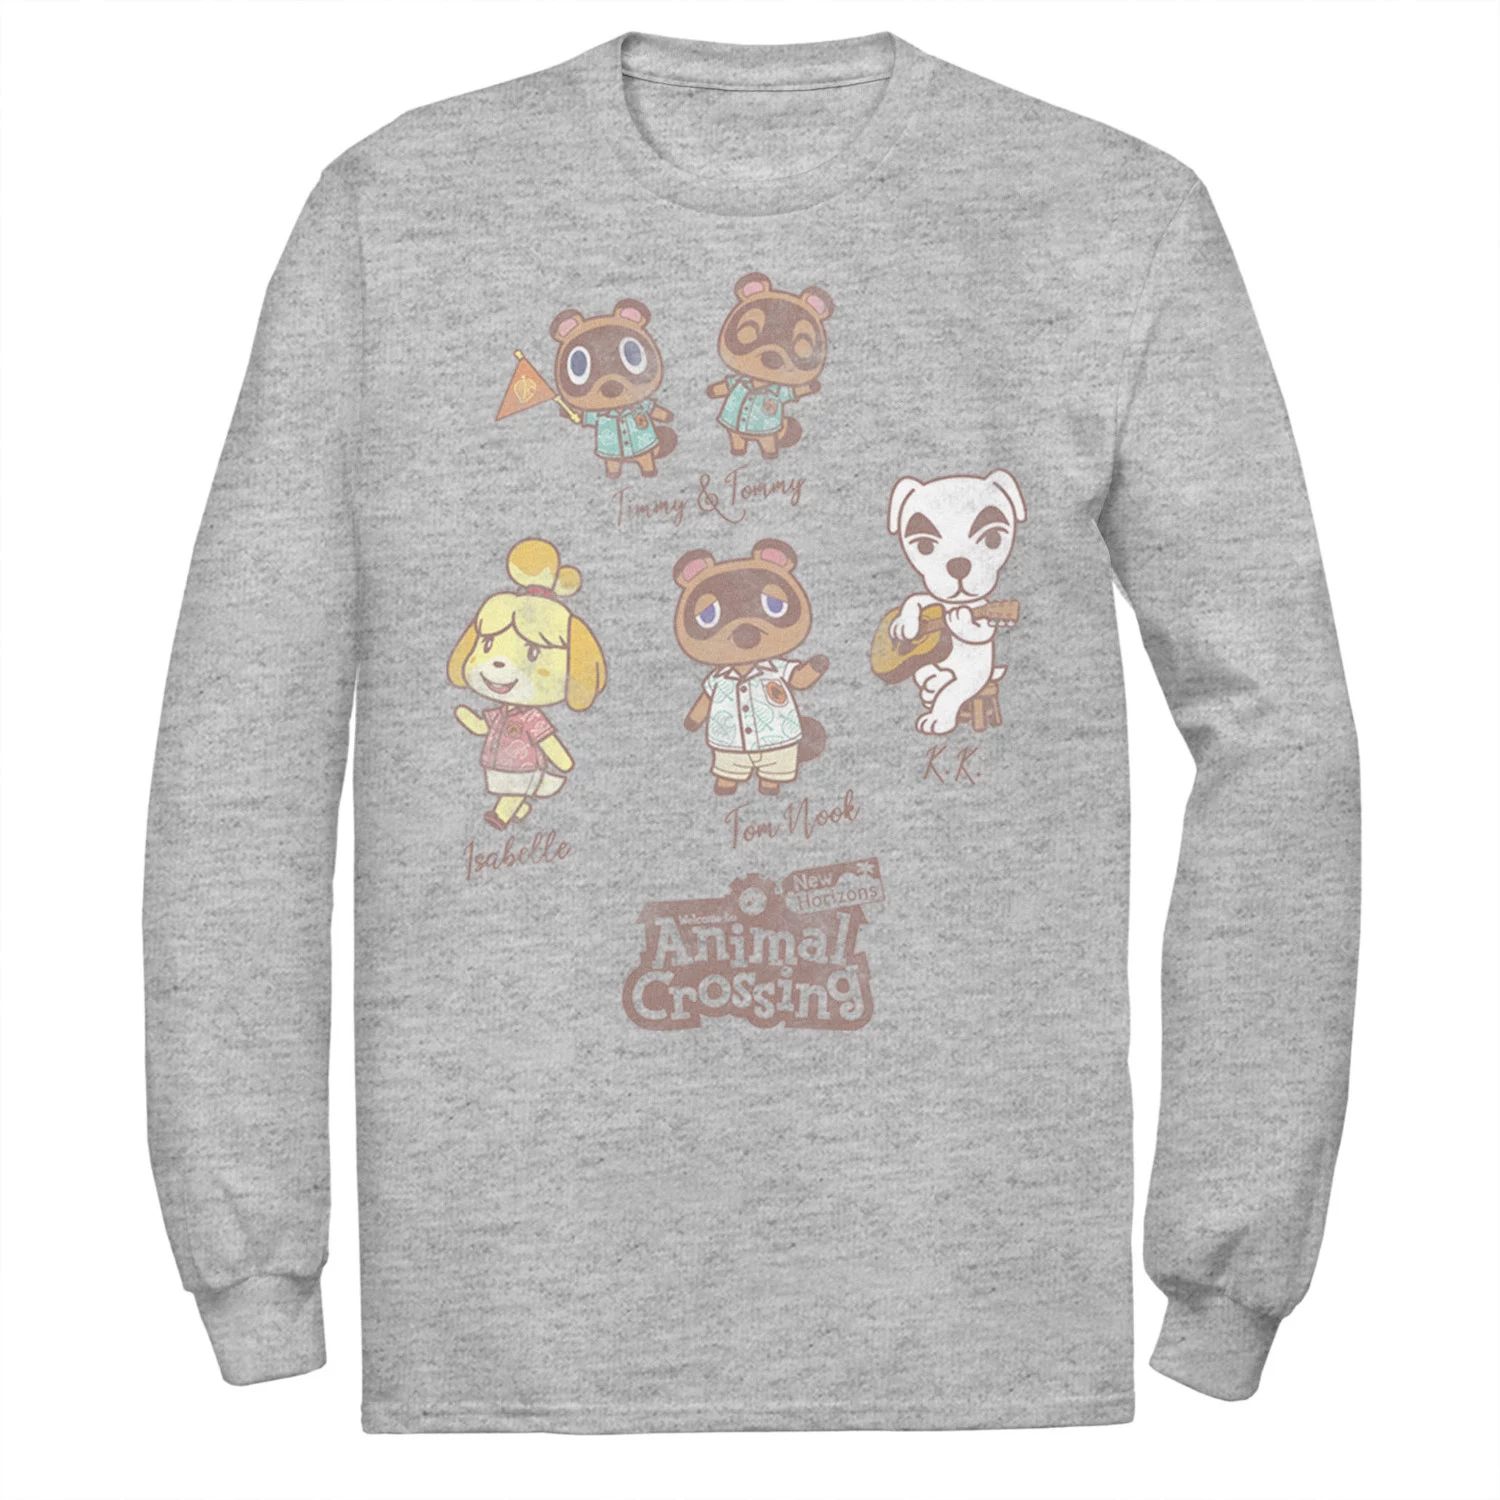 Мужская футболка с именами Animal Crossing New Horizons Group Shot Licensed Character